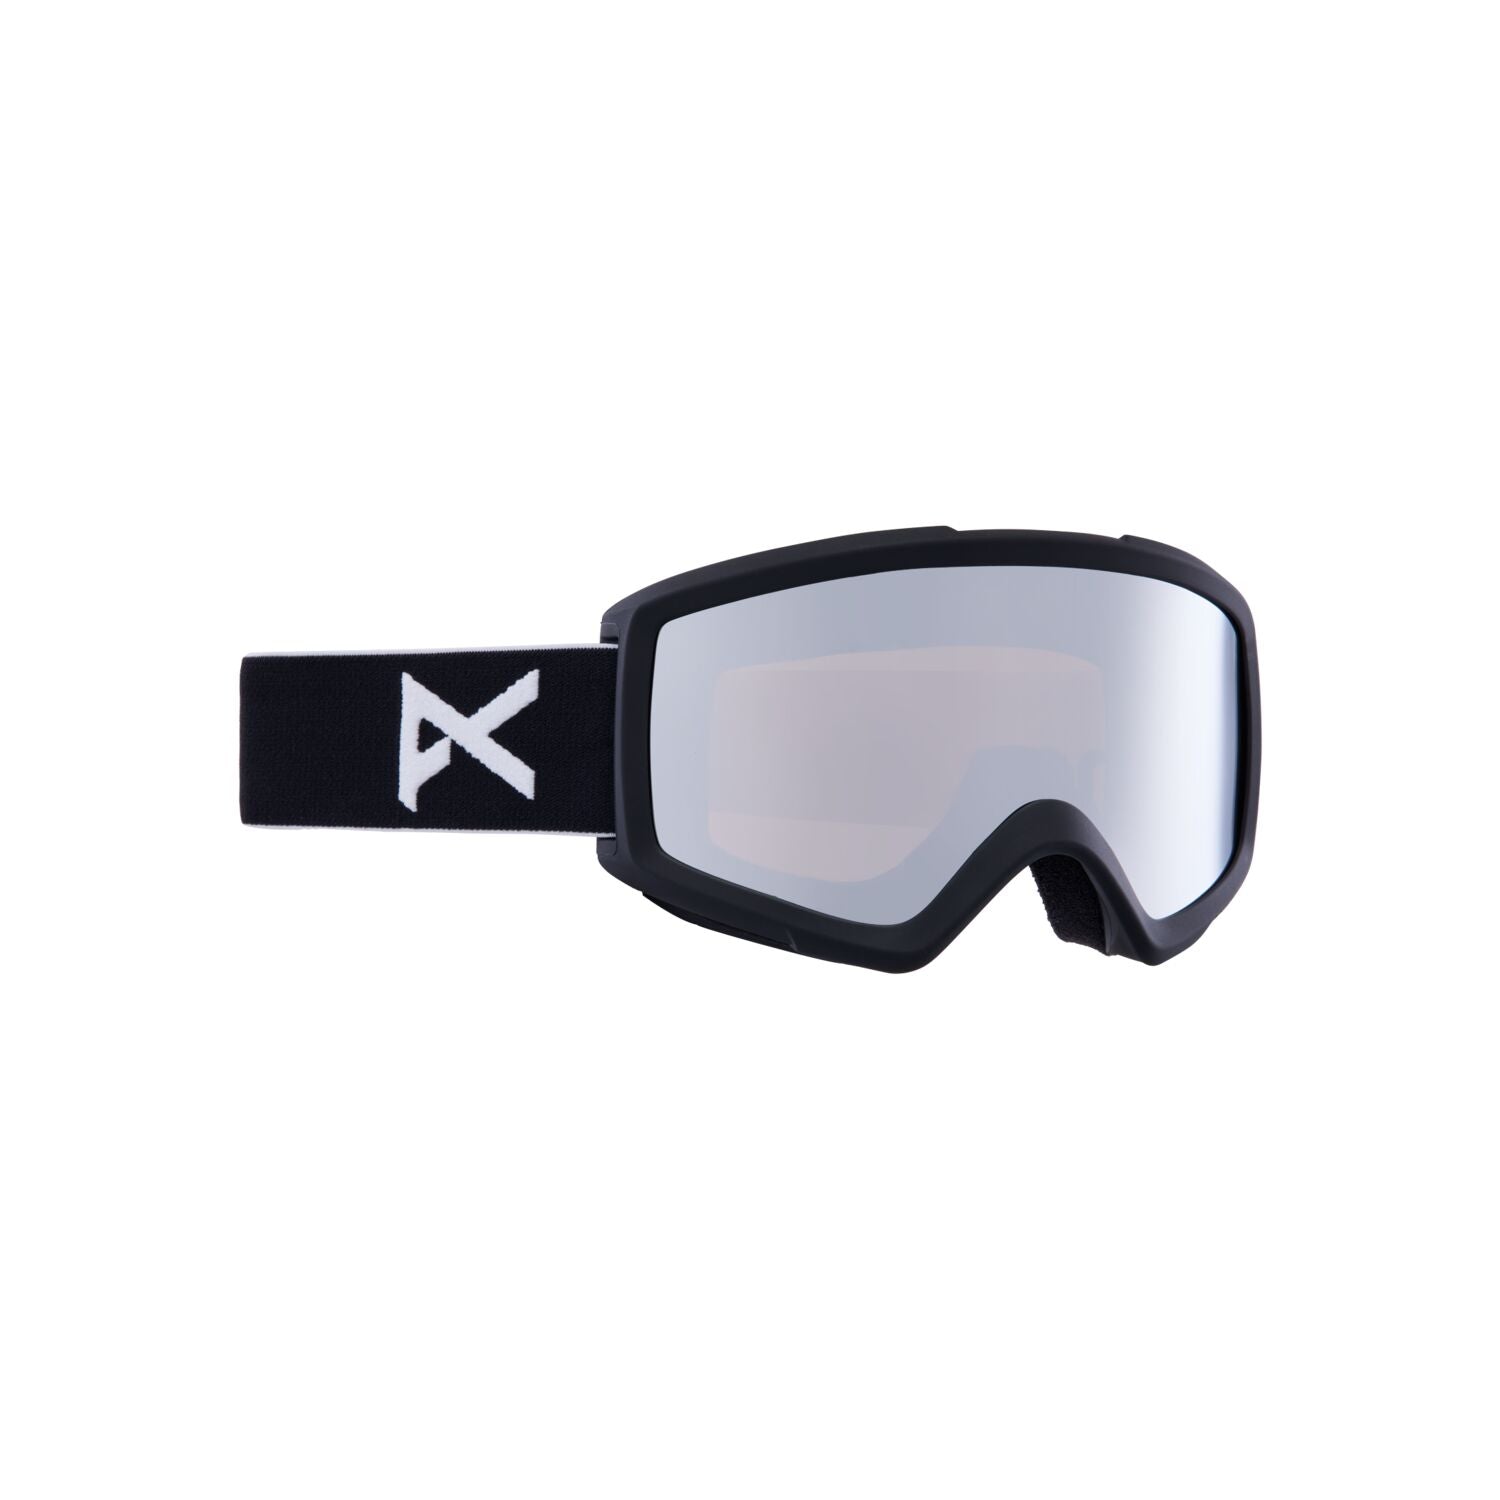 Helix 2.0 Goggles + Bonus Lens - Black